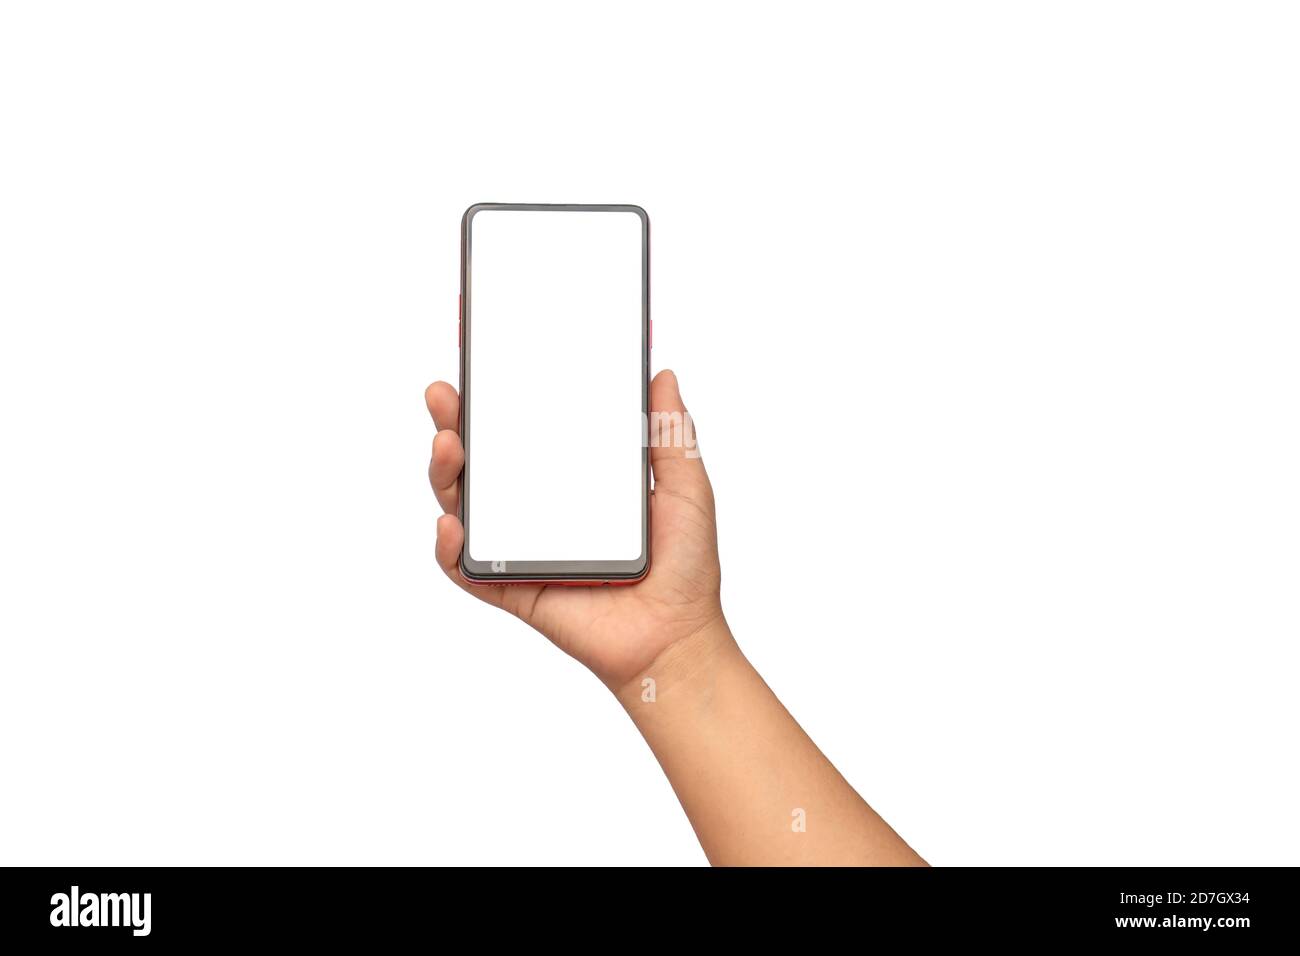 La main tient l'écran blanc, le téléphone portable est isolé sur un fond blanc avec le chemin de coupure. Concept de connexion de communication. Banque D'Images